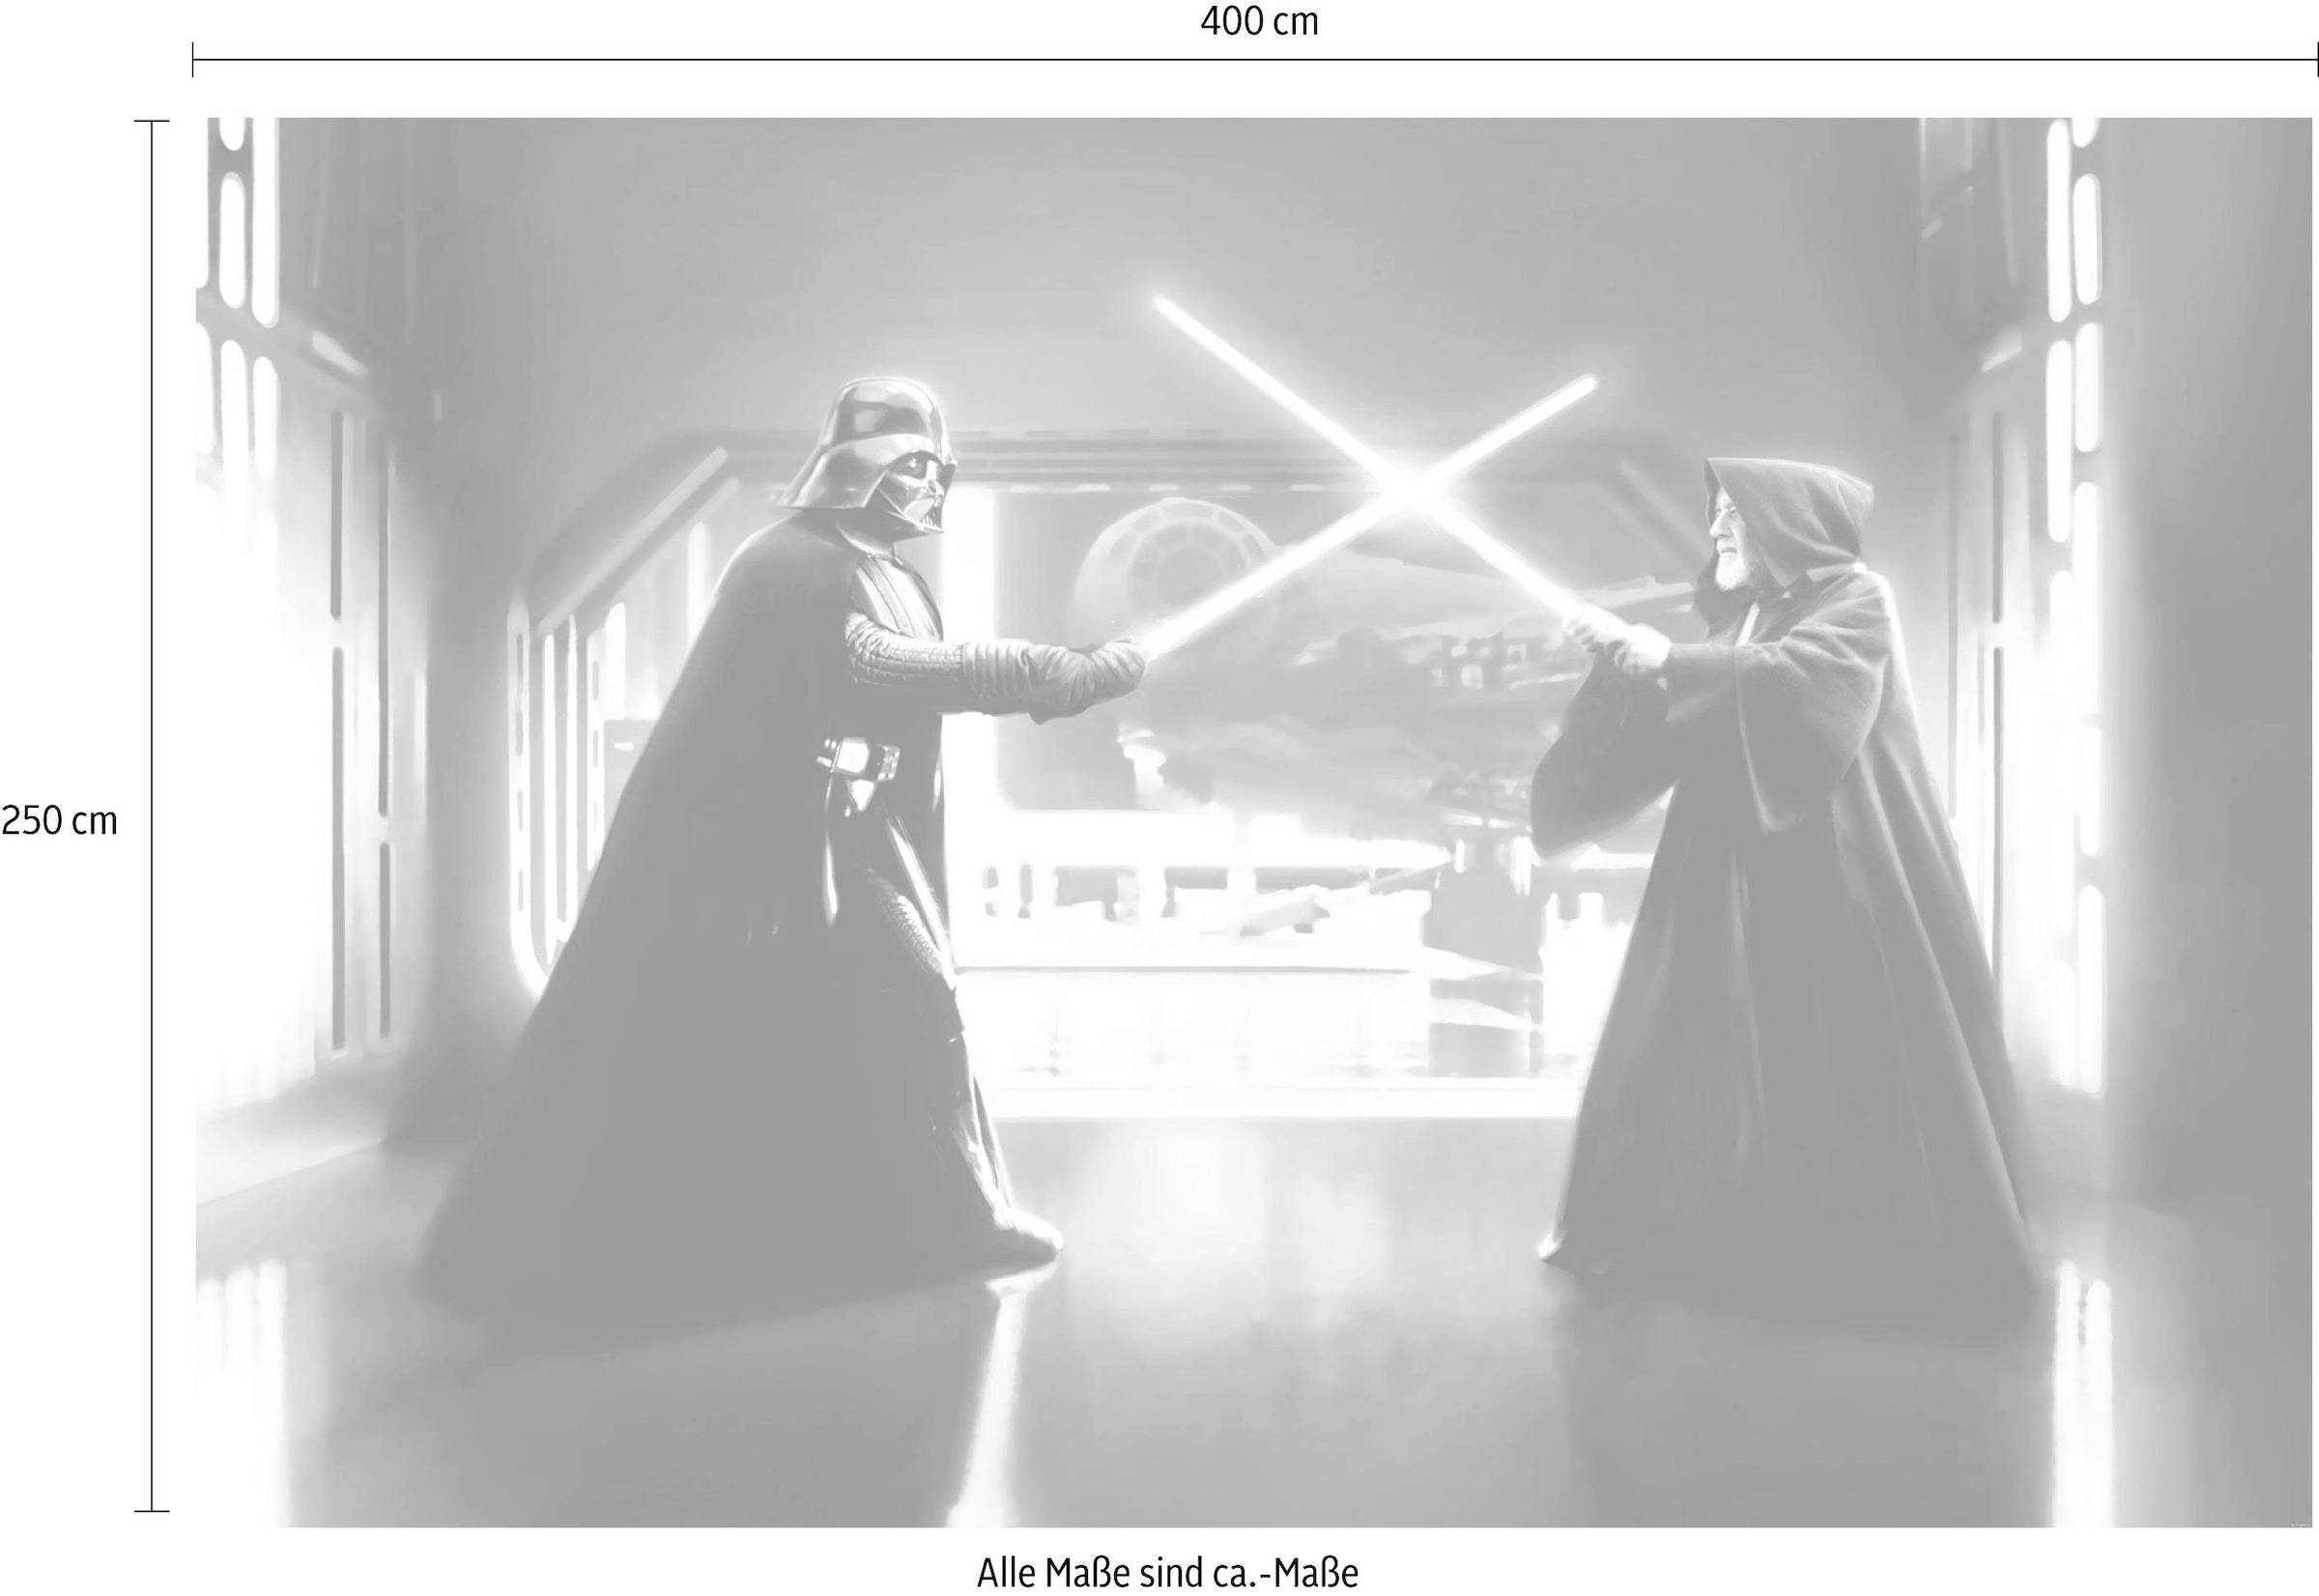 ✌ Komar Vliestapete »Star Wars Vader ligne 100 Kenobi«, (Breite cm Vliestapete, 300x200 x Bahnbreite cm vs. Acheter Höhe), en